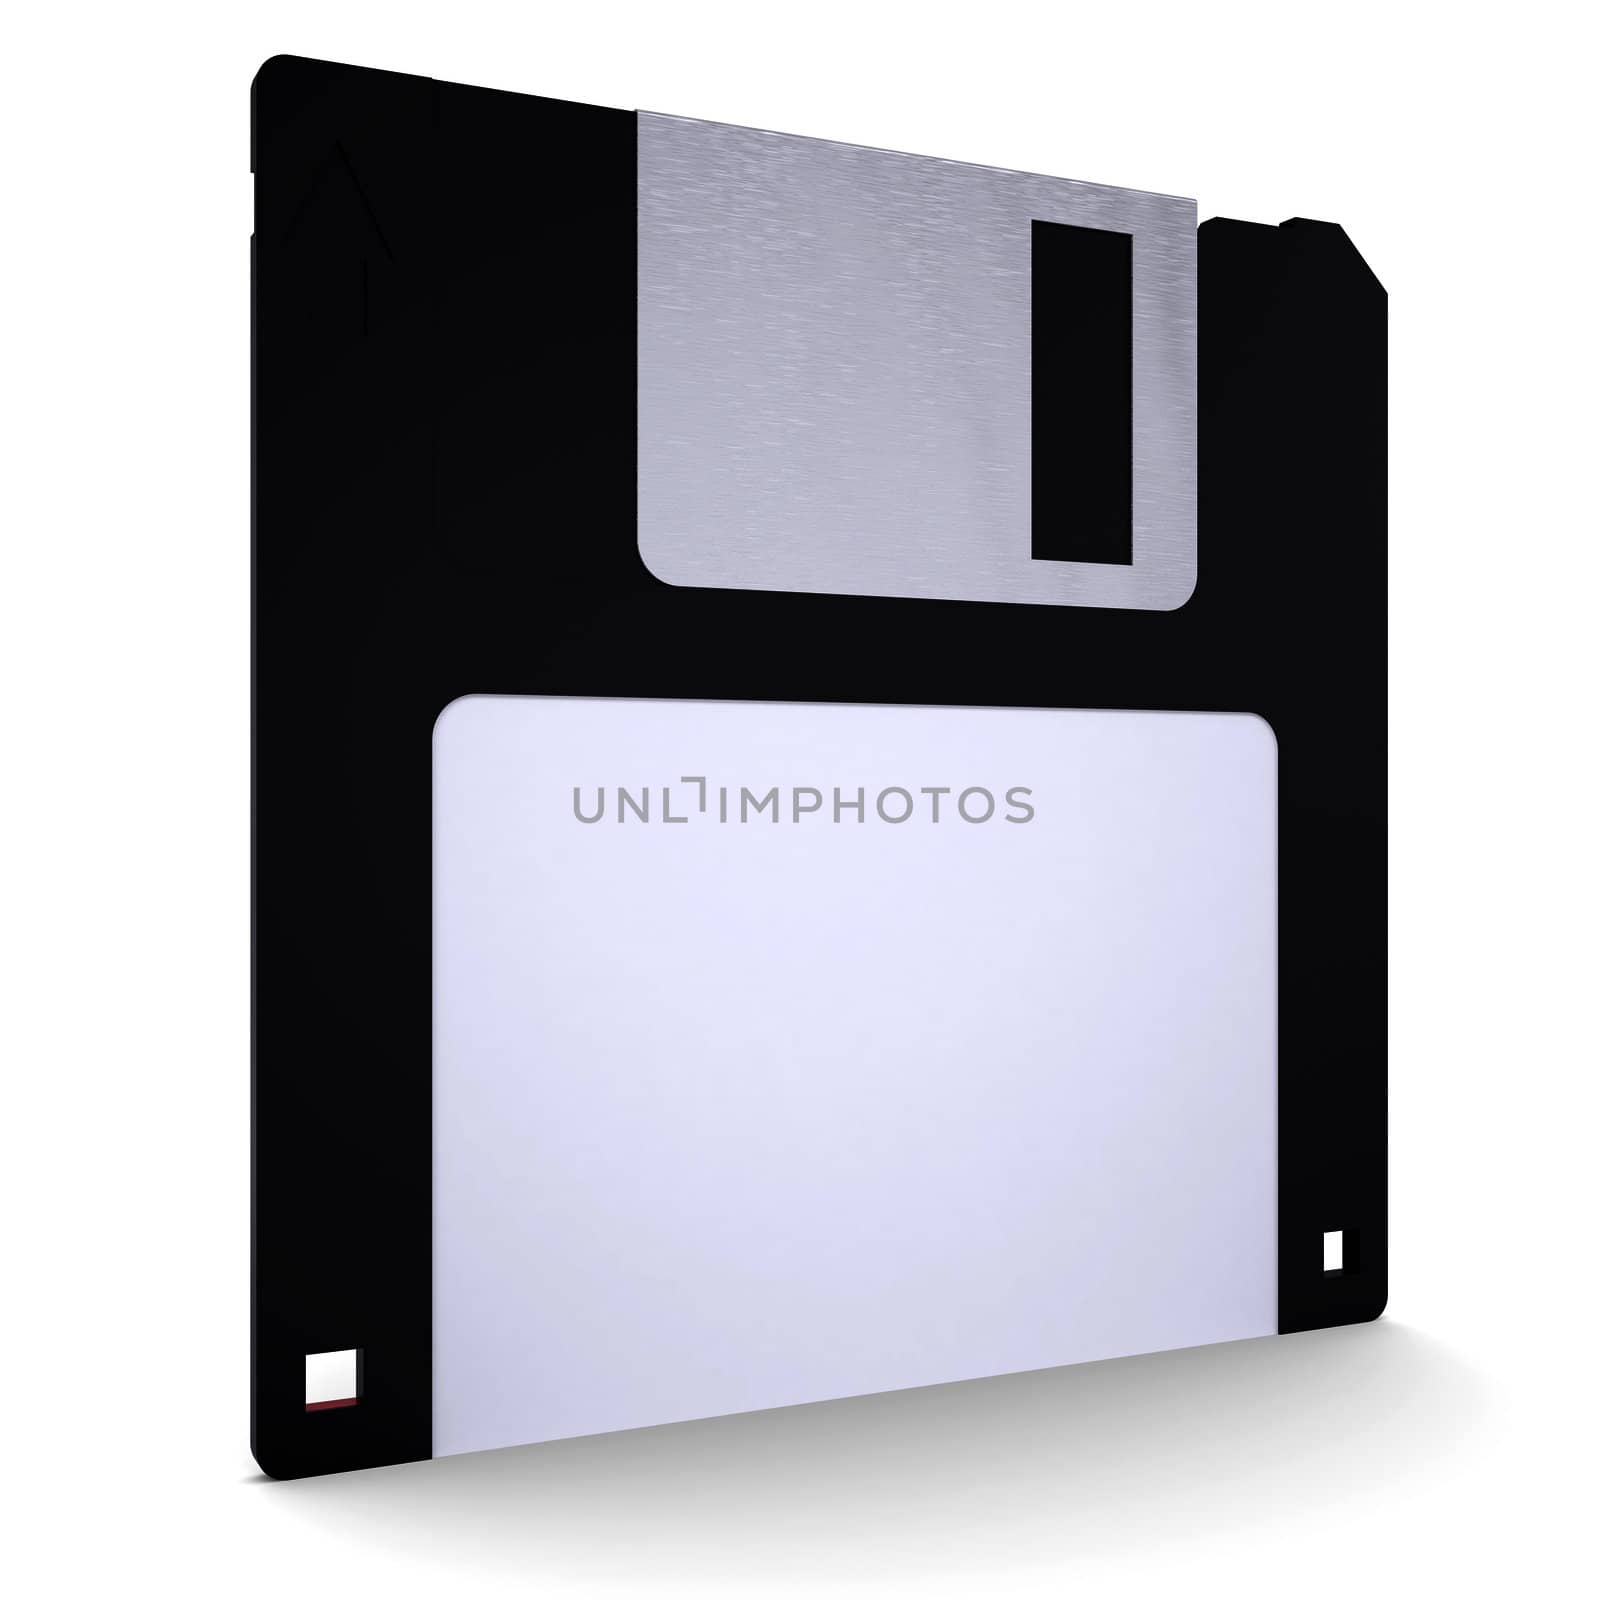 Floppy disk by cherezoff